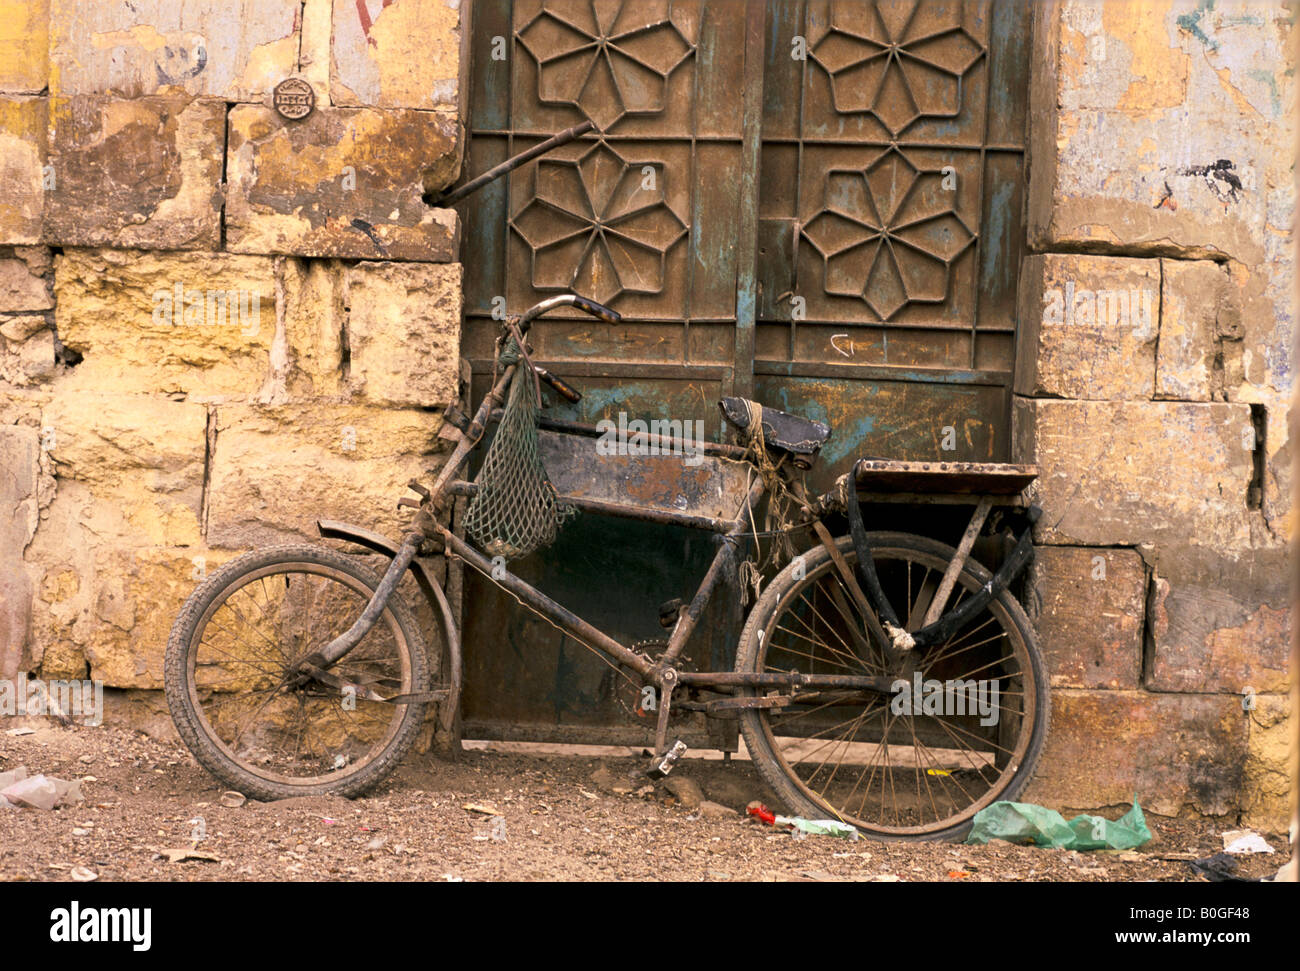 Un vieux vélo par une porte, de l'Égypte. Banque D'Images